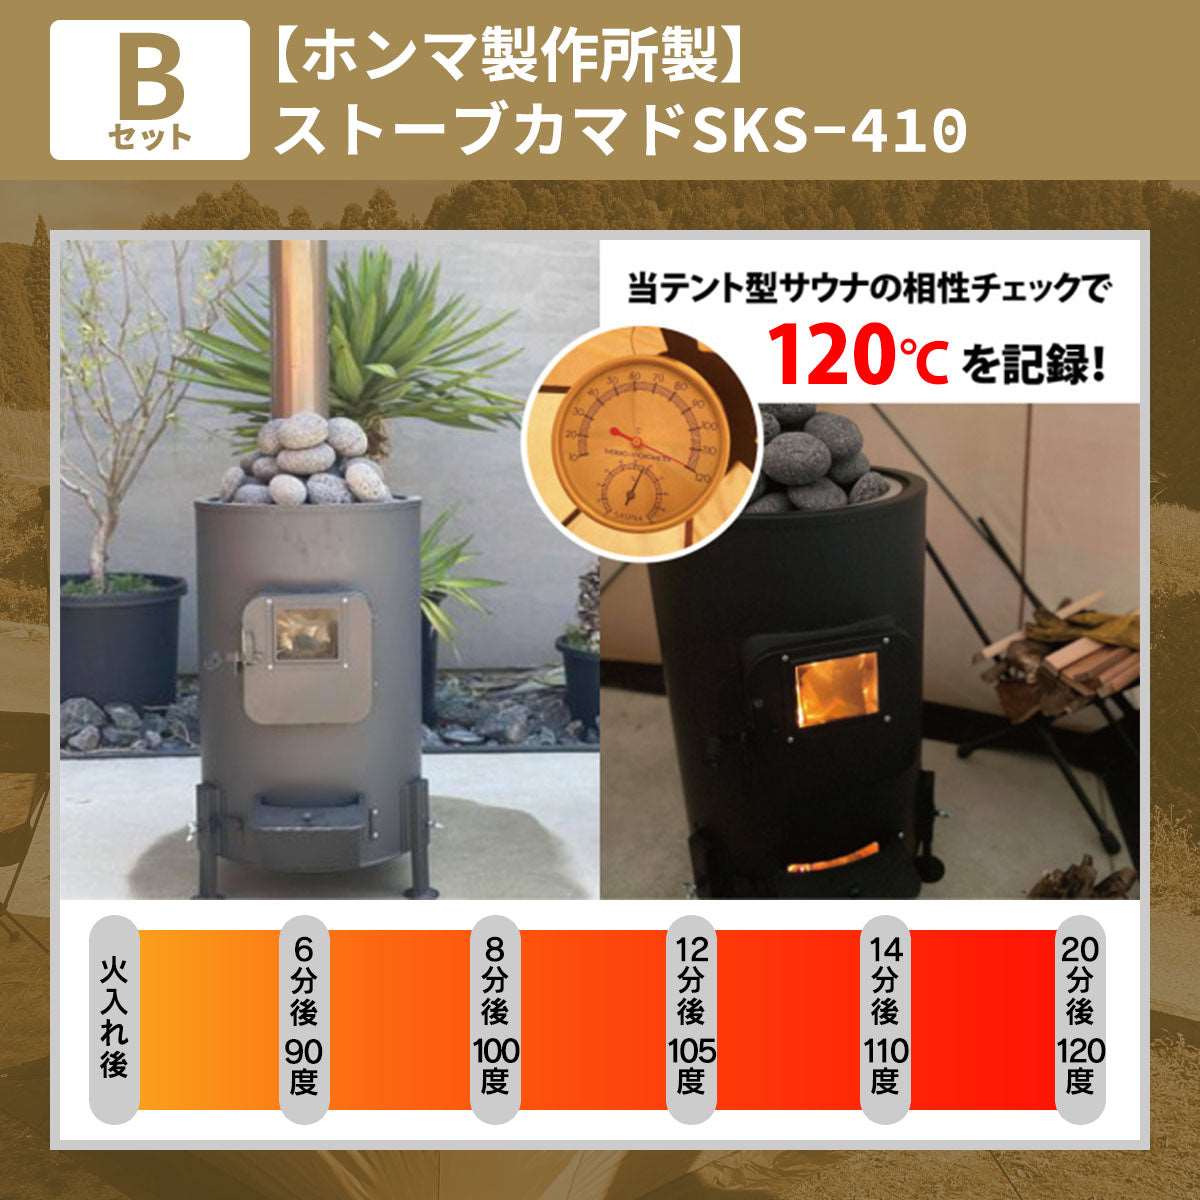 ストーブカマド SKS-410【ホンマ製作所製】